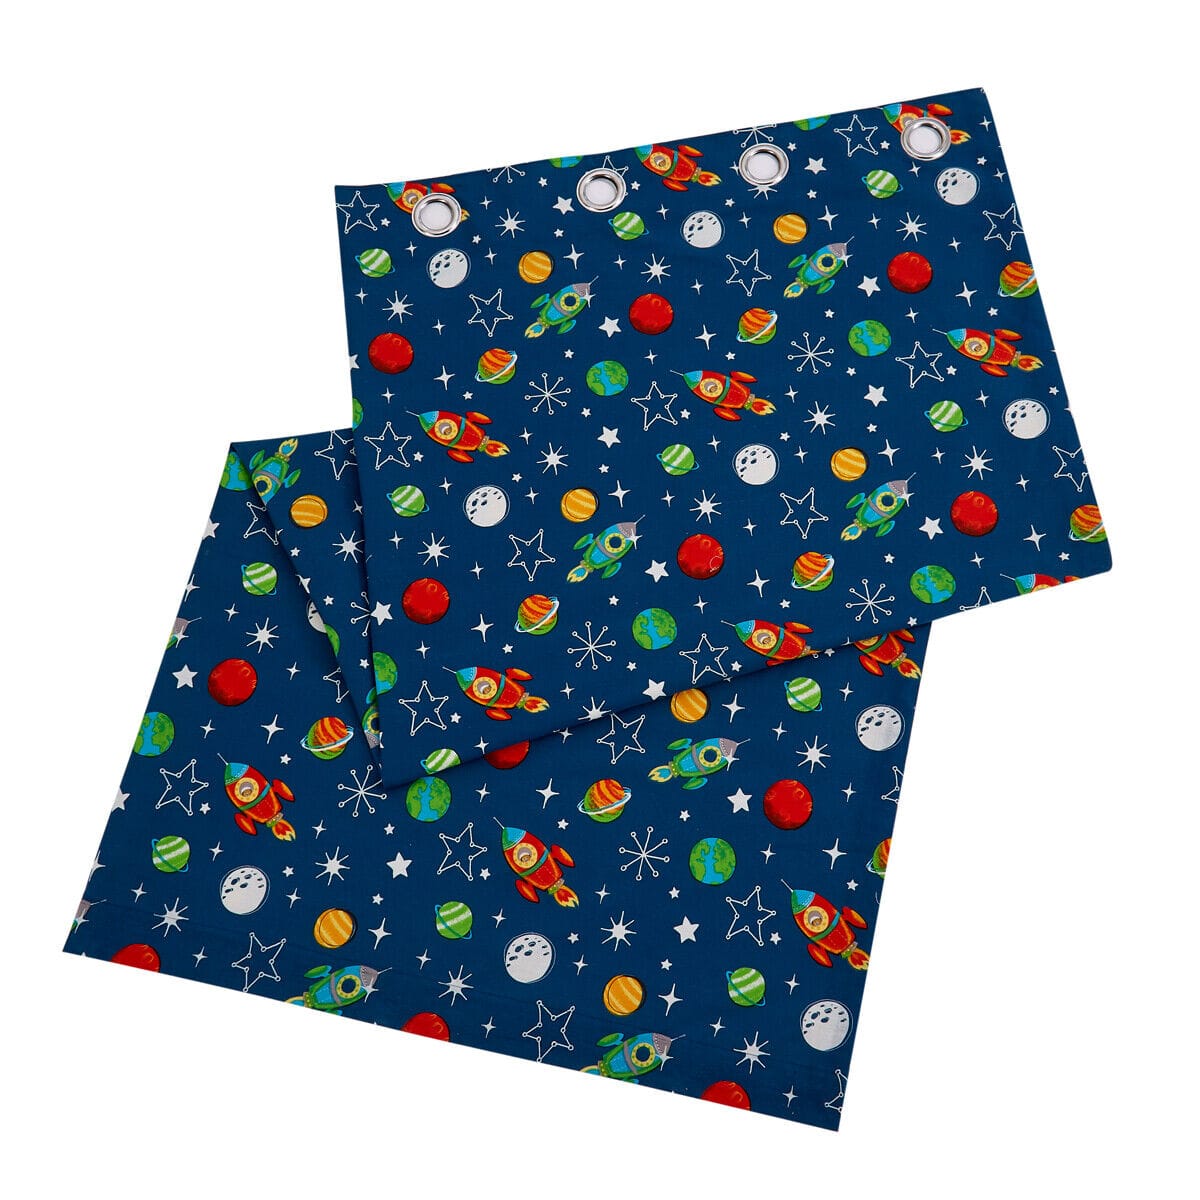 Space Explorer Kids Duvet Set CURTAINS OLIVIA ROCCO Duvet Covers